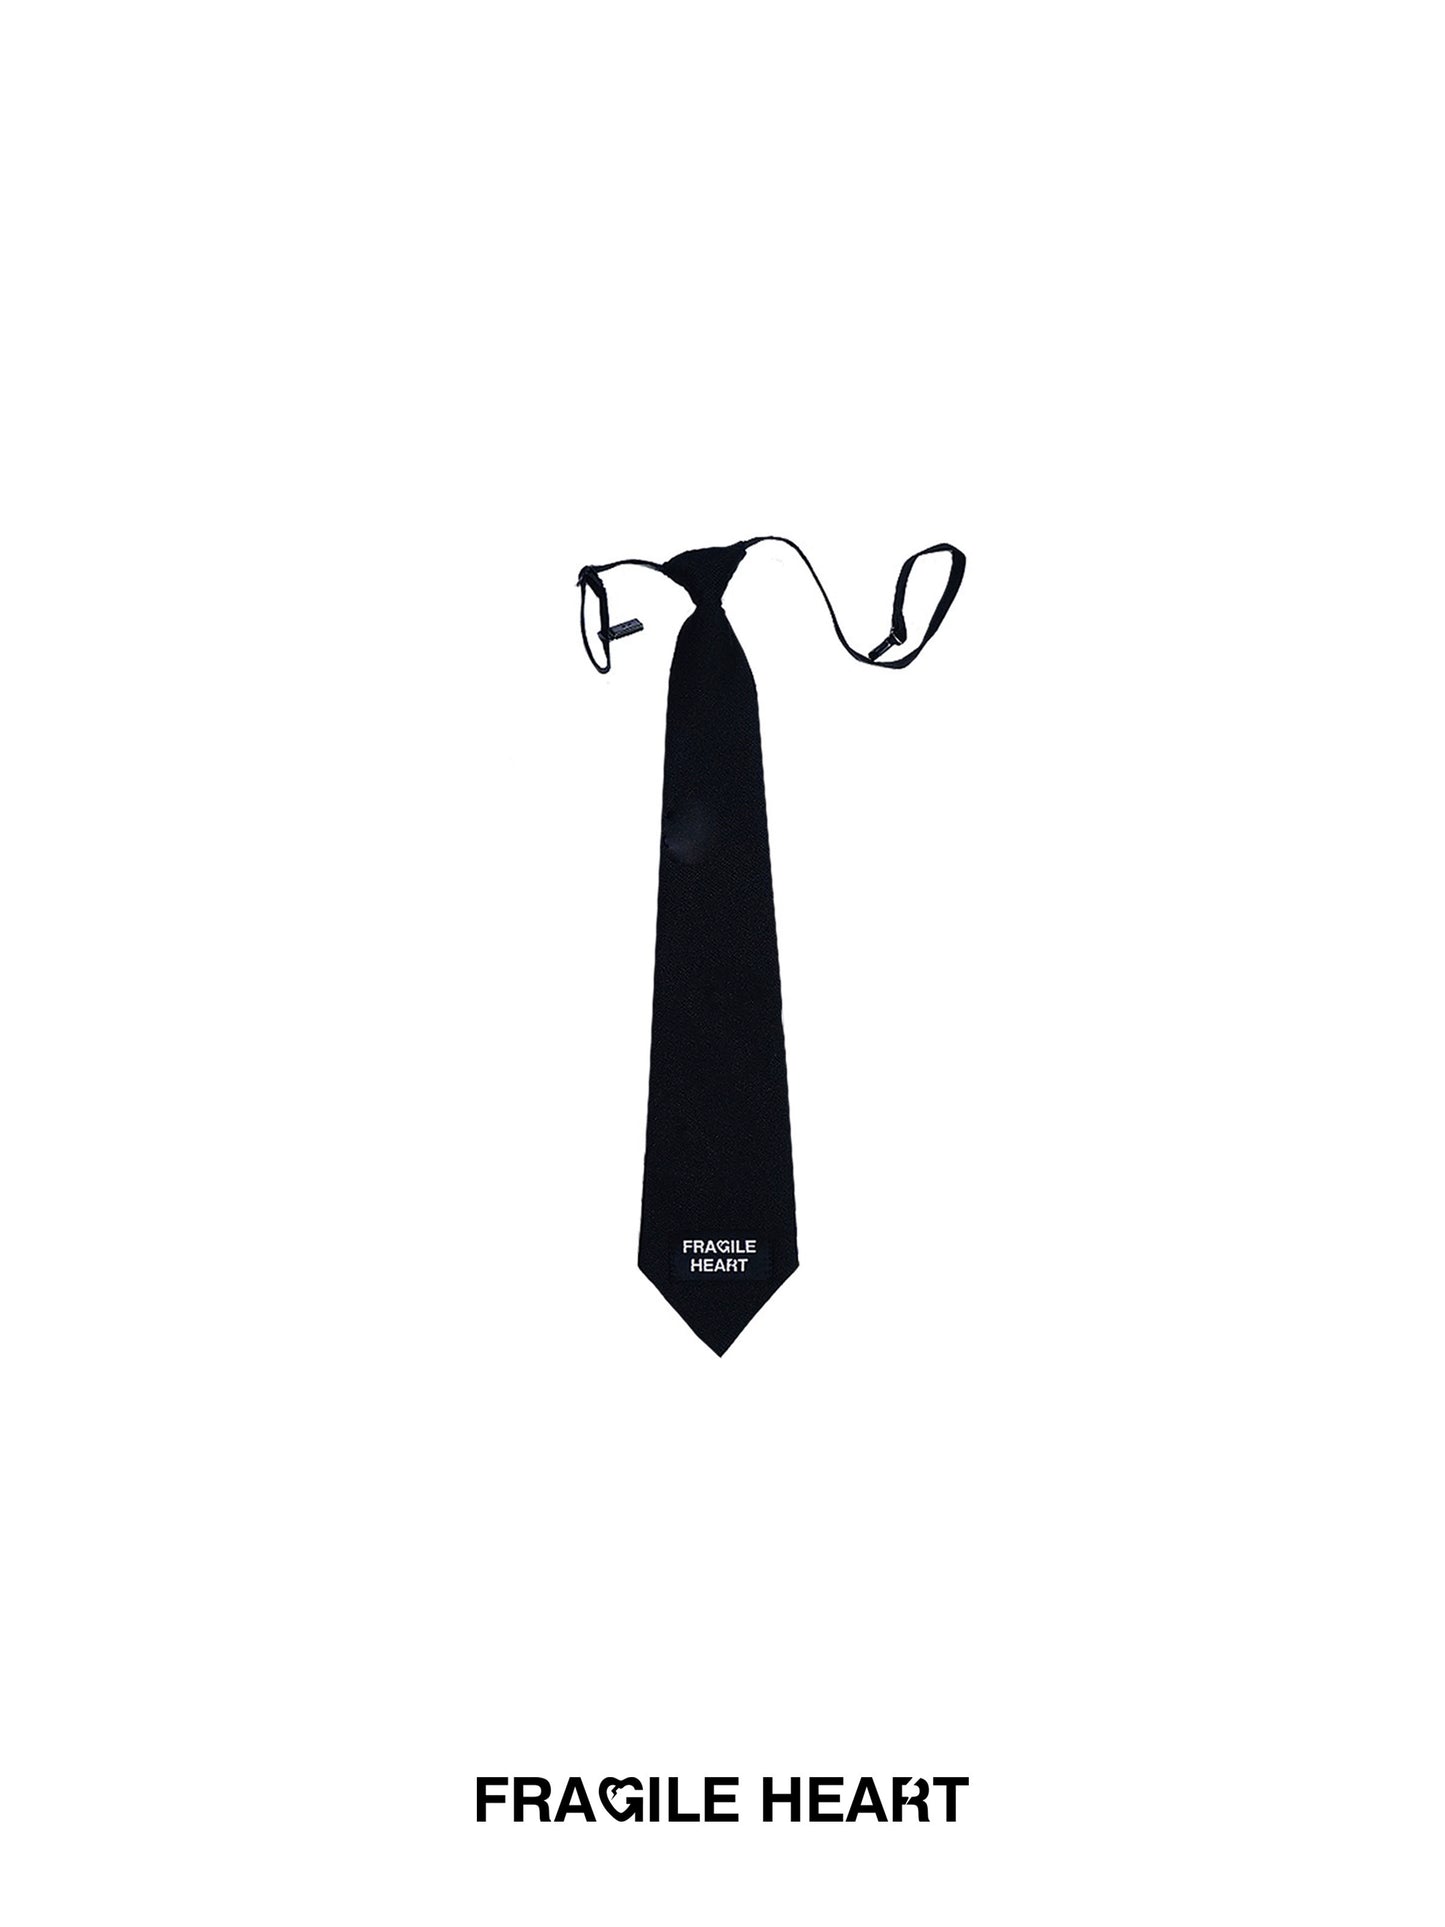 Academy Style Black Tie